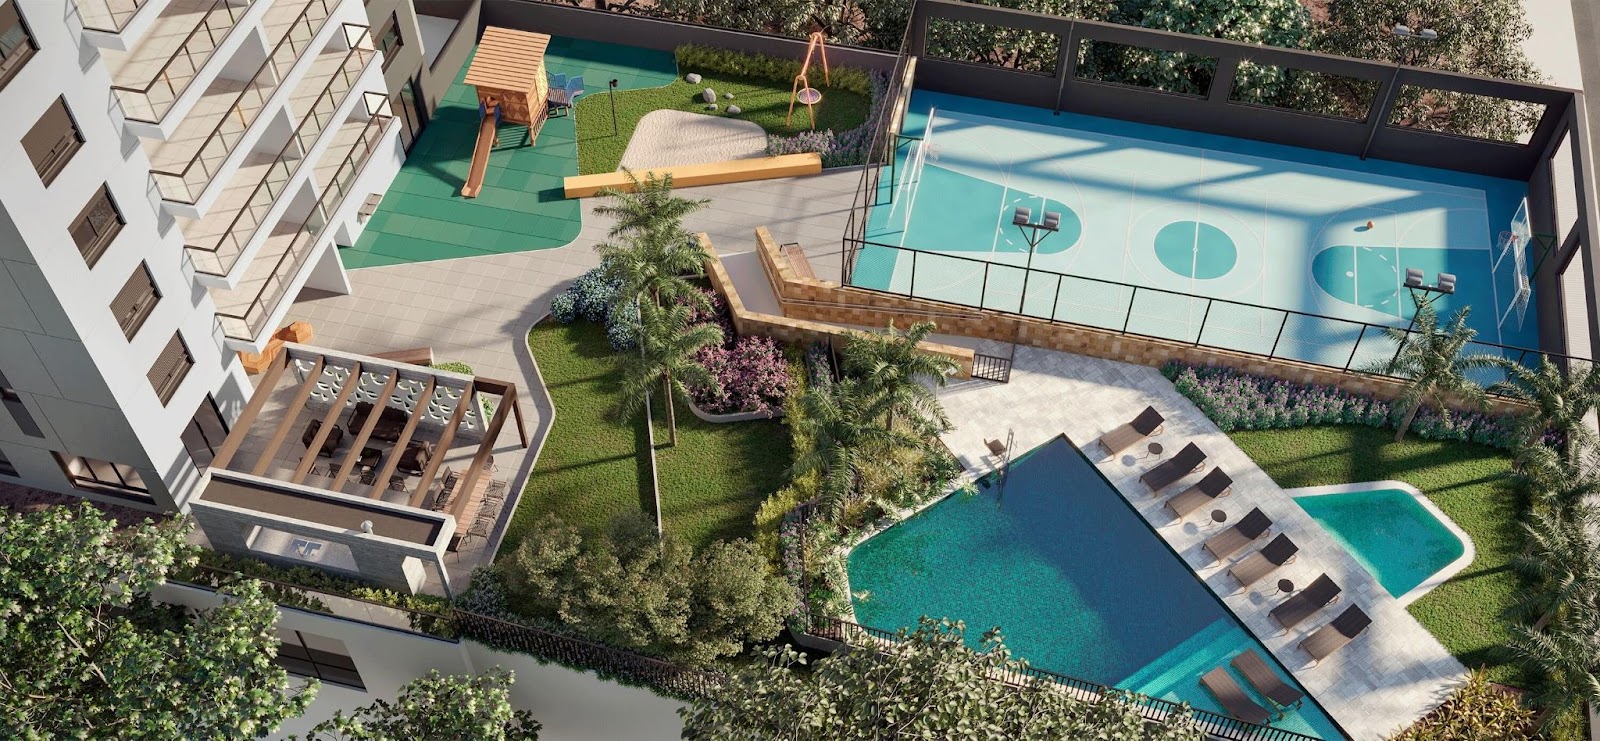 uma das melhores áreas de lazer com piscina da Tecnisa fica no empreendimento W/L Vila Romana